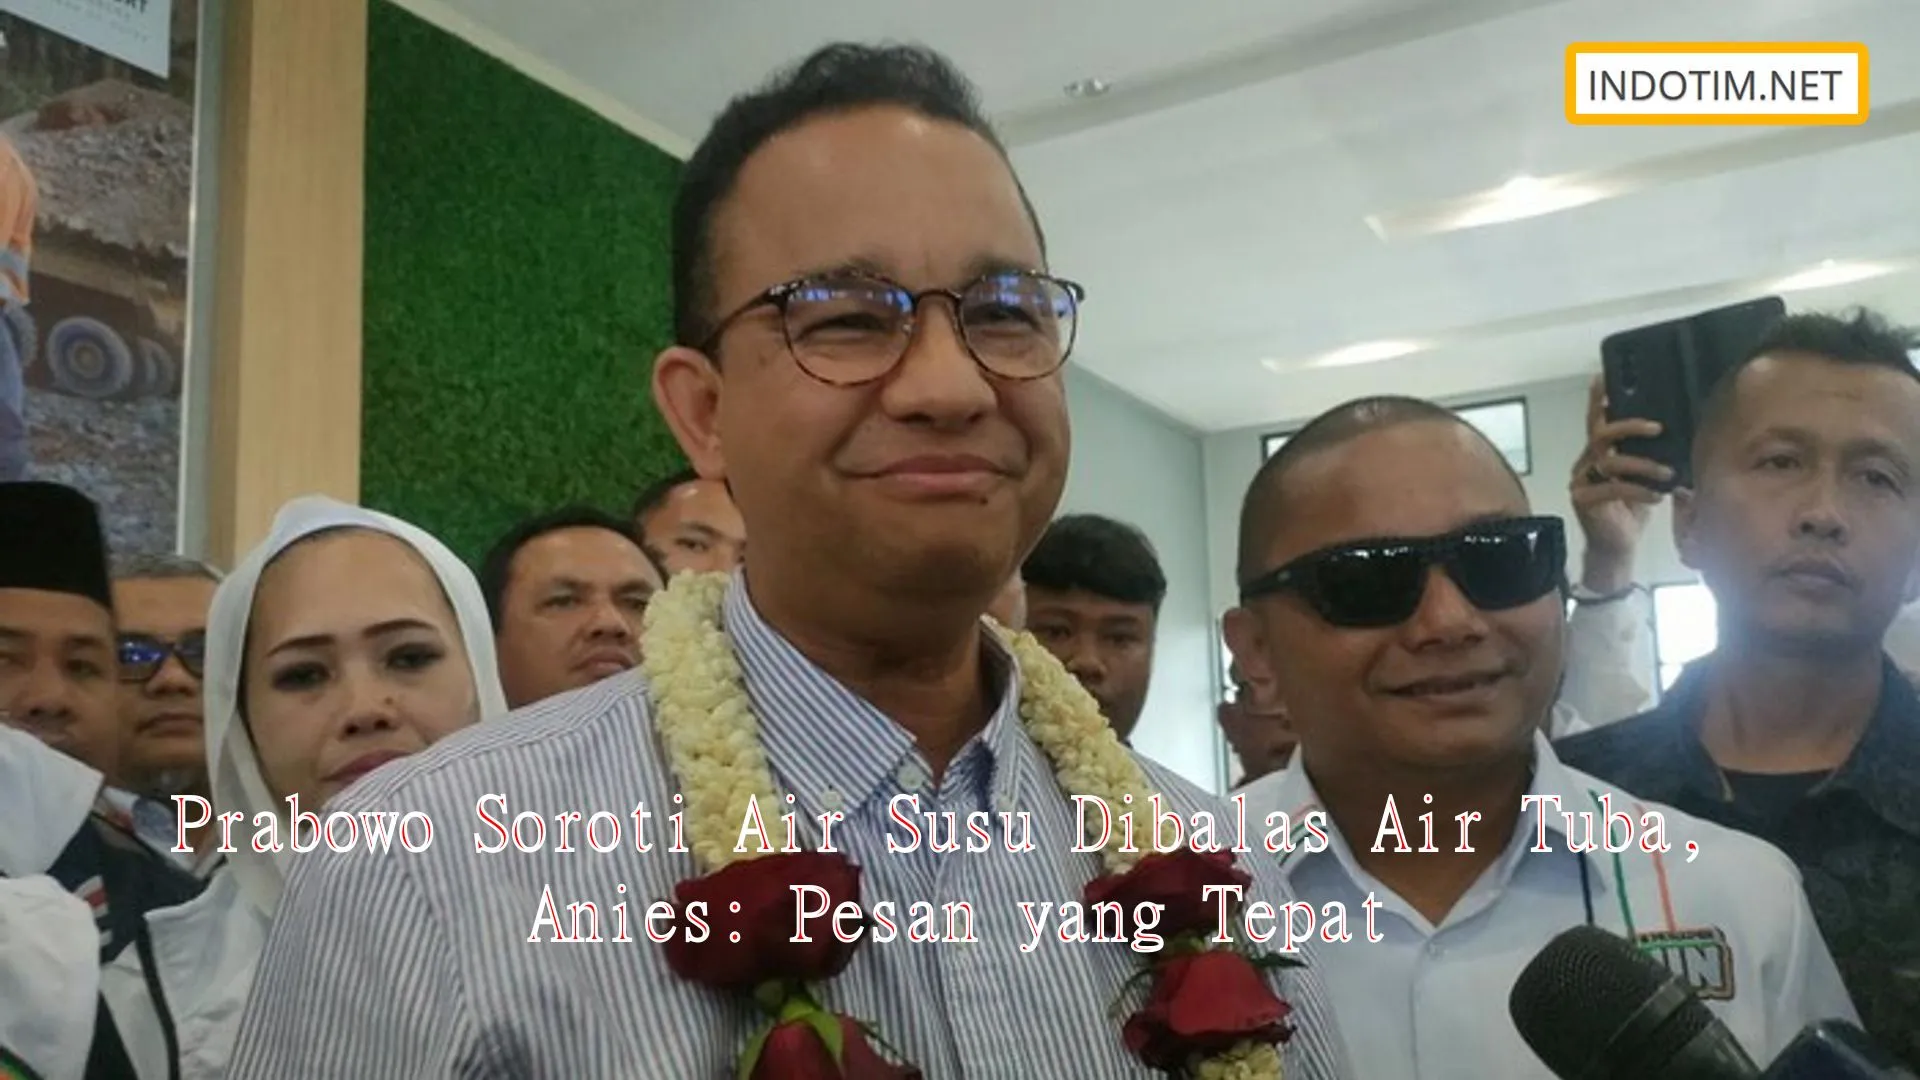 Prabowo Soroti Air Susu Dibalas Air Tuba, Anies: Pesan yang Tepat